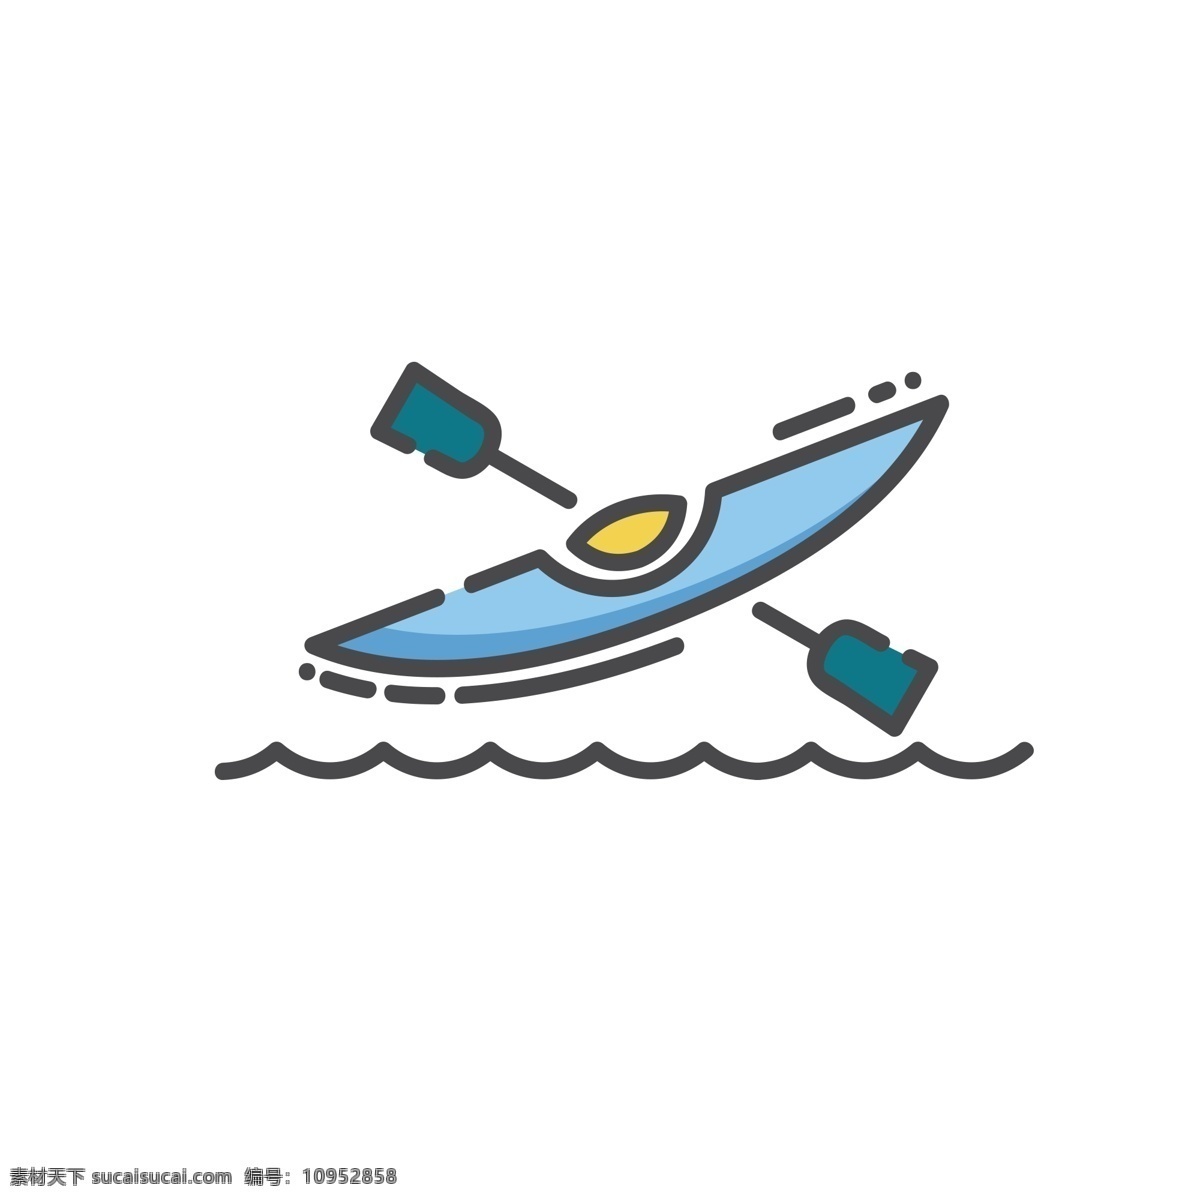 卡通单人划艇 单人划艇 水上运动 扁平化ui ui图标 手机图标 界面ui 网页ui h5图标